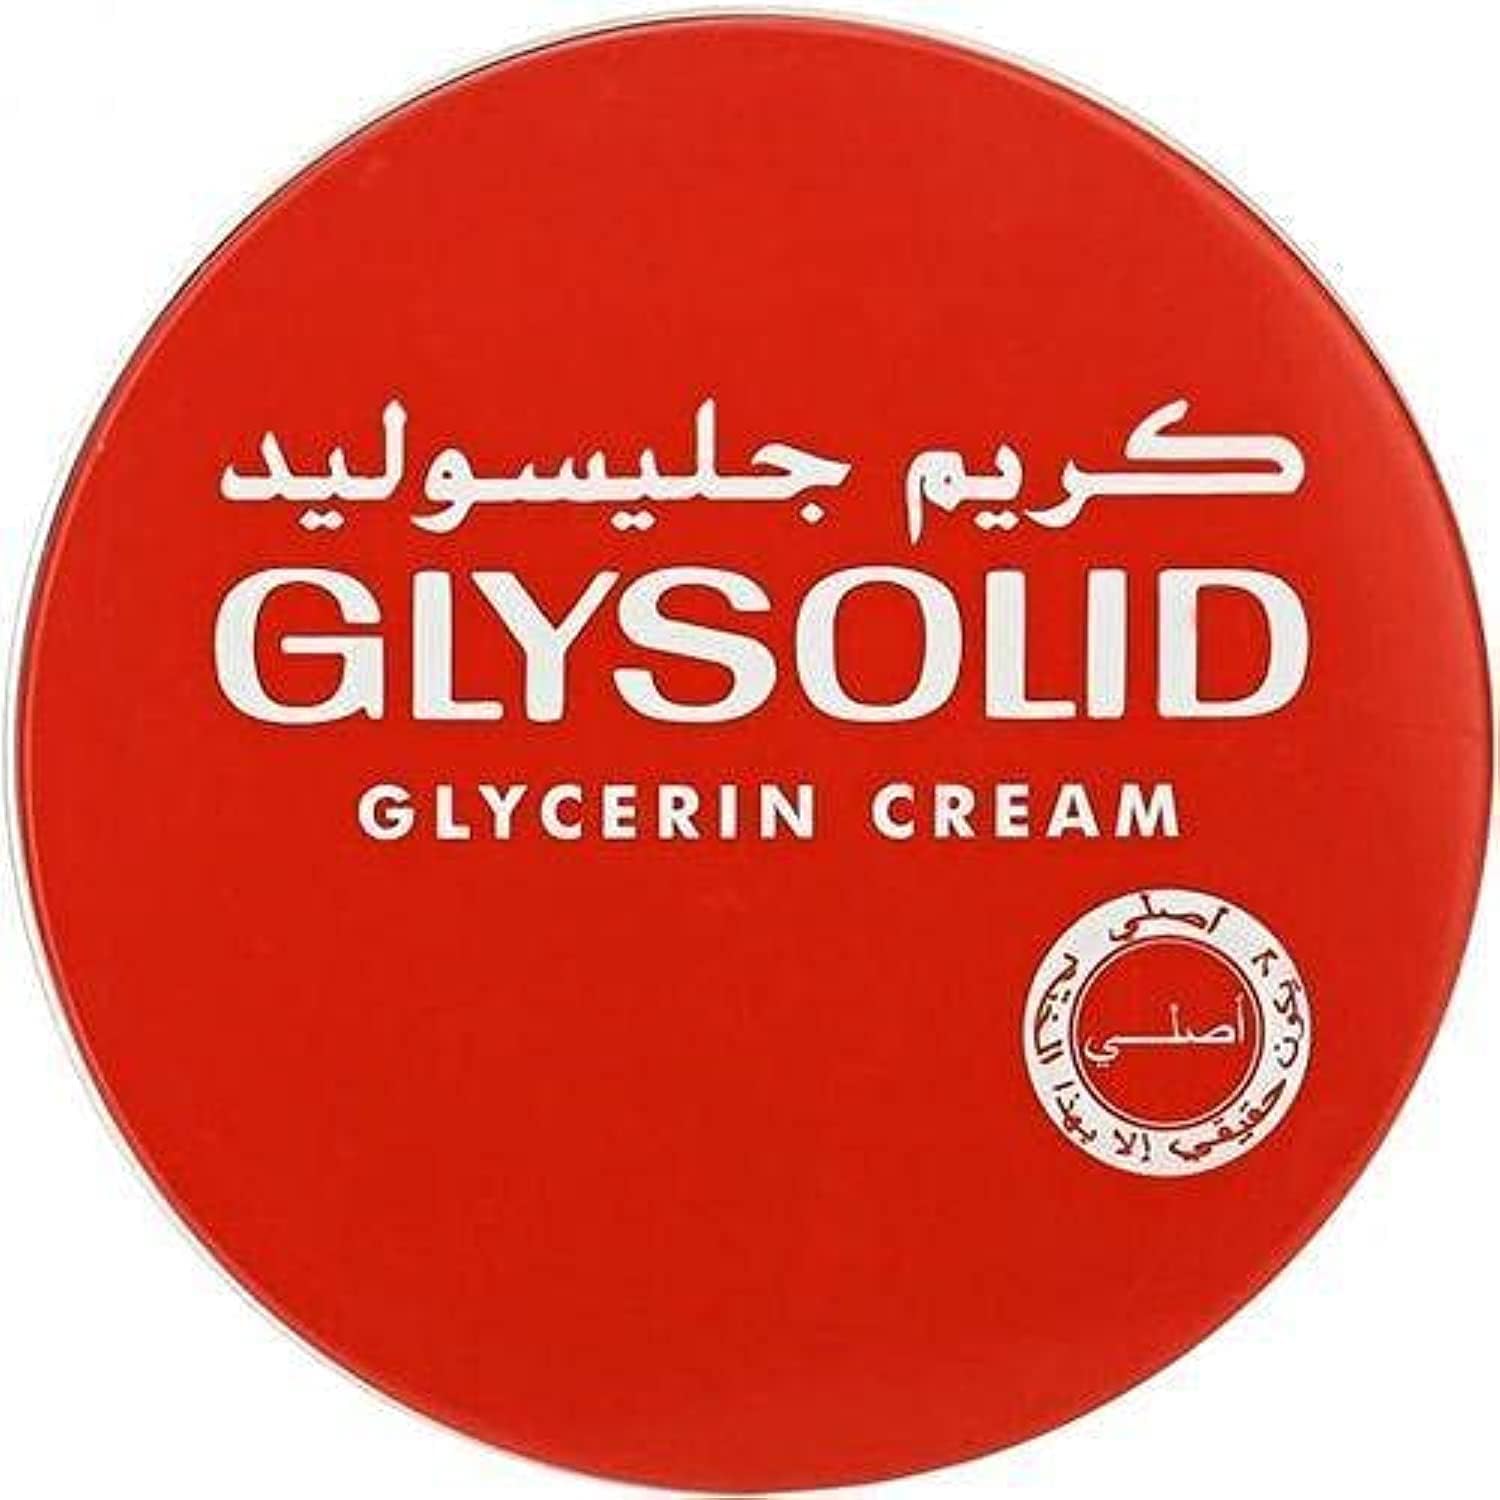 GLYSOLID GLYCRIN CREAM 40ML